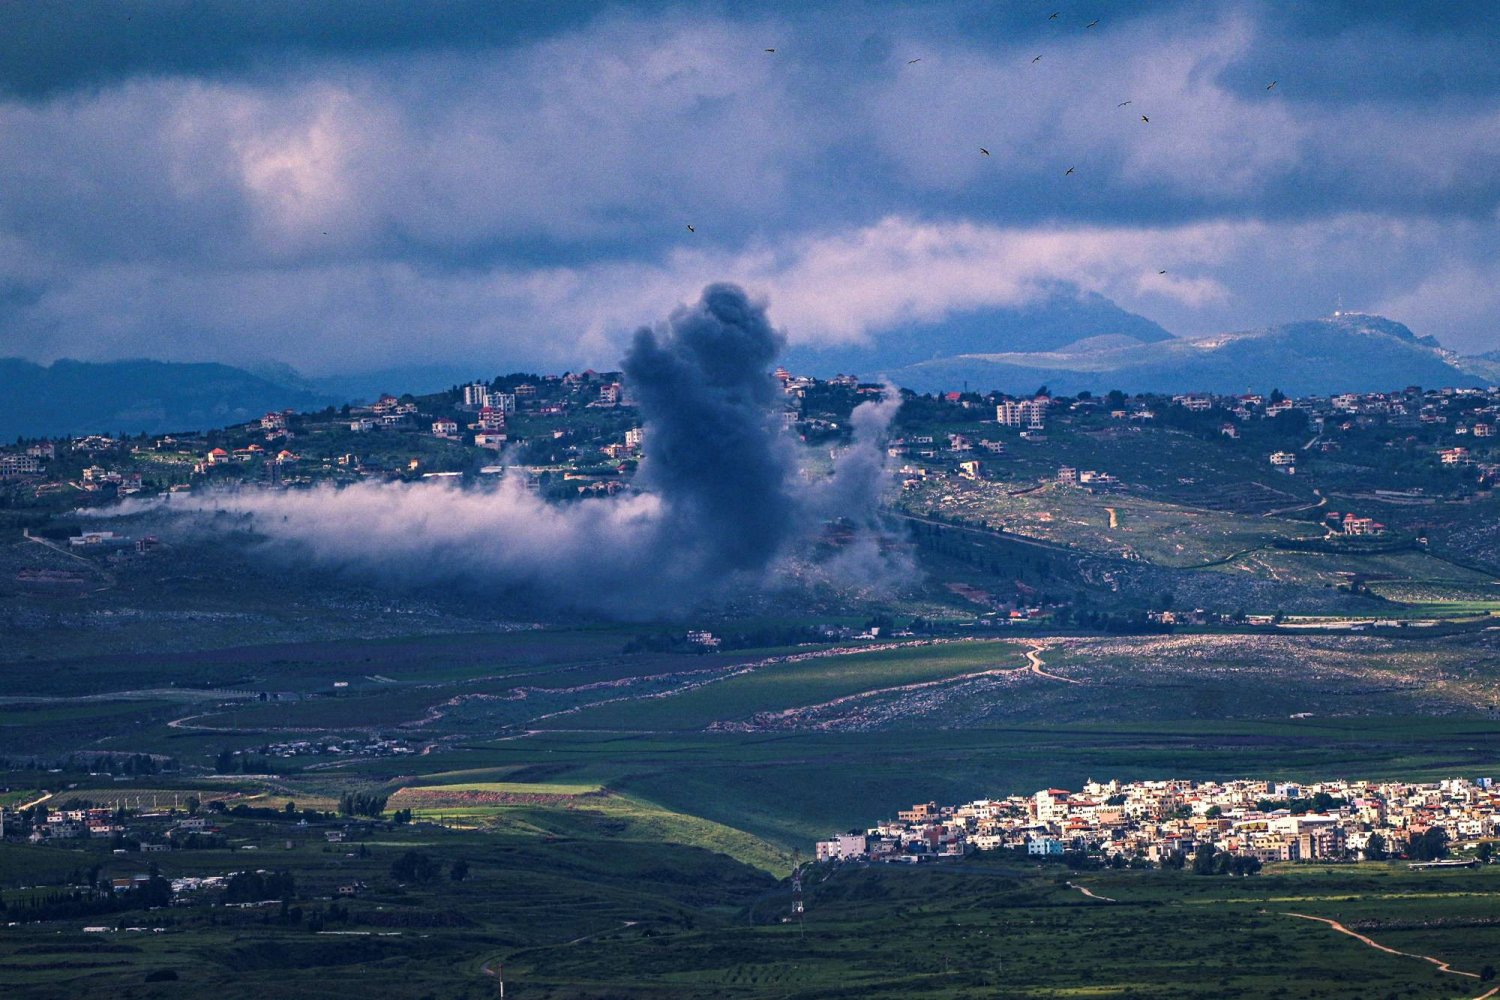 غارات اسرائيلية تستهدف بلدات في جنوب لبنان